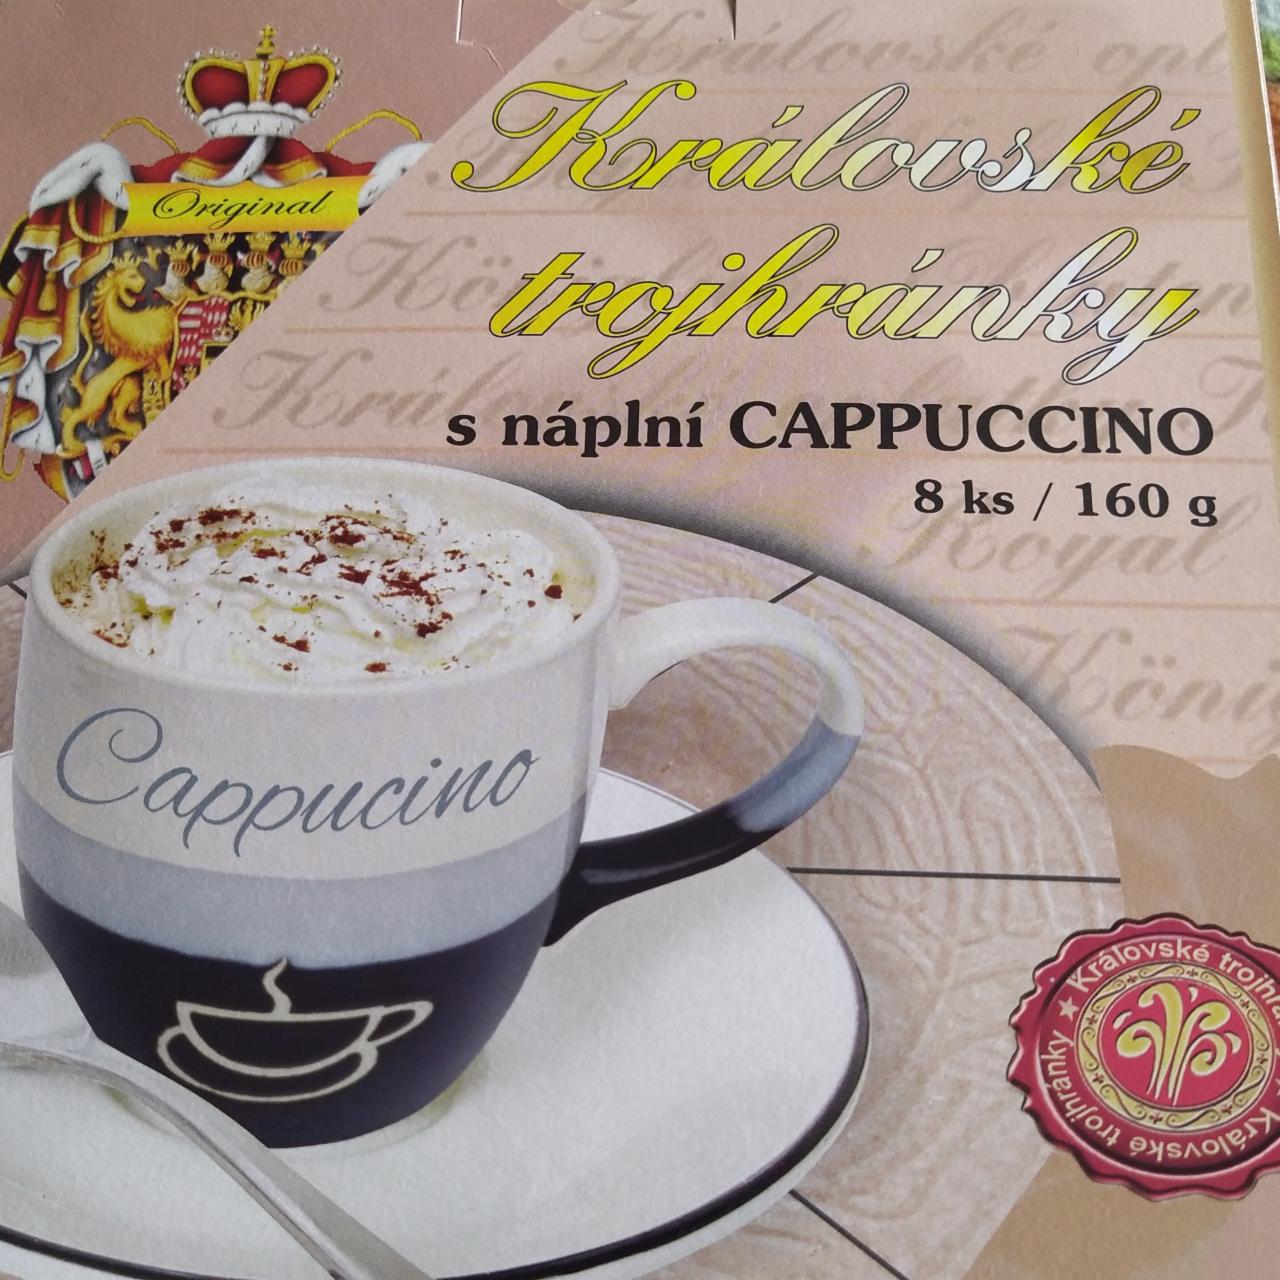 Fotografie - Královské trojhránky s náplní Cappuccino